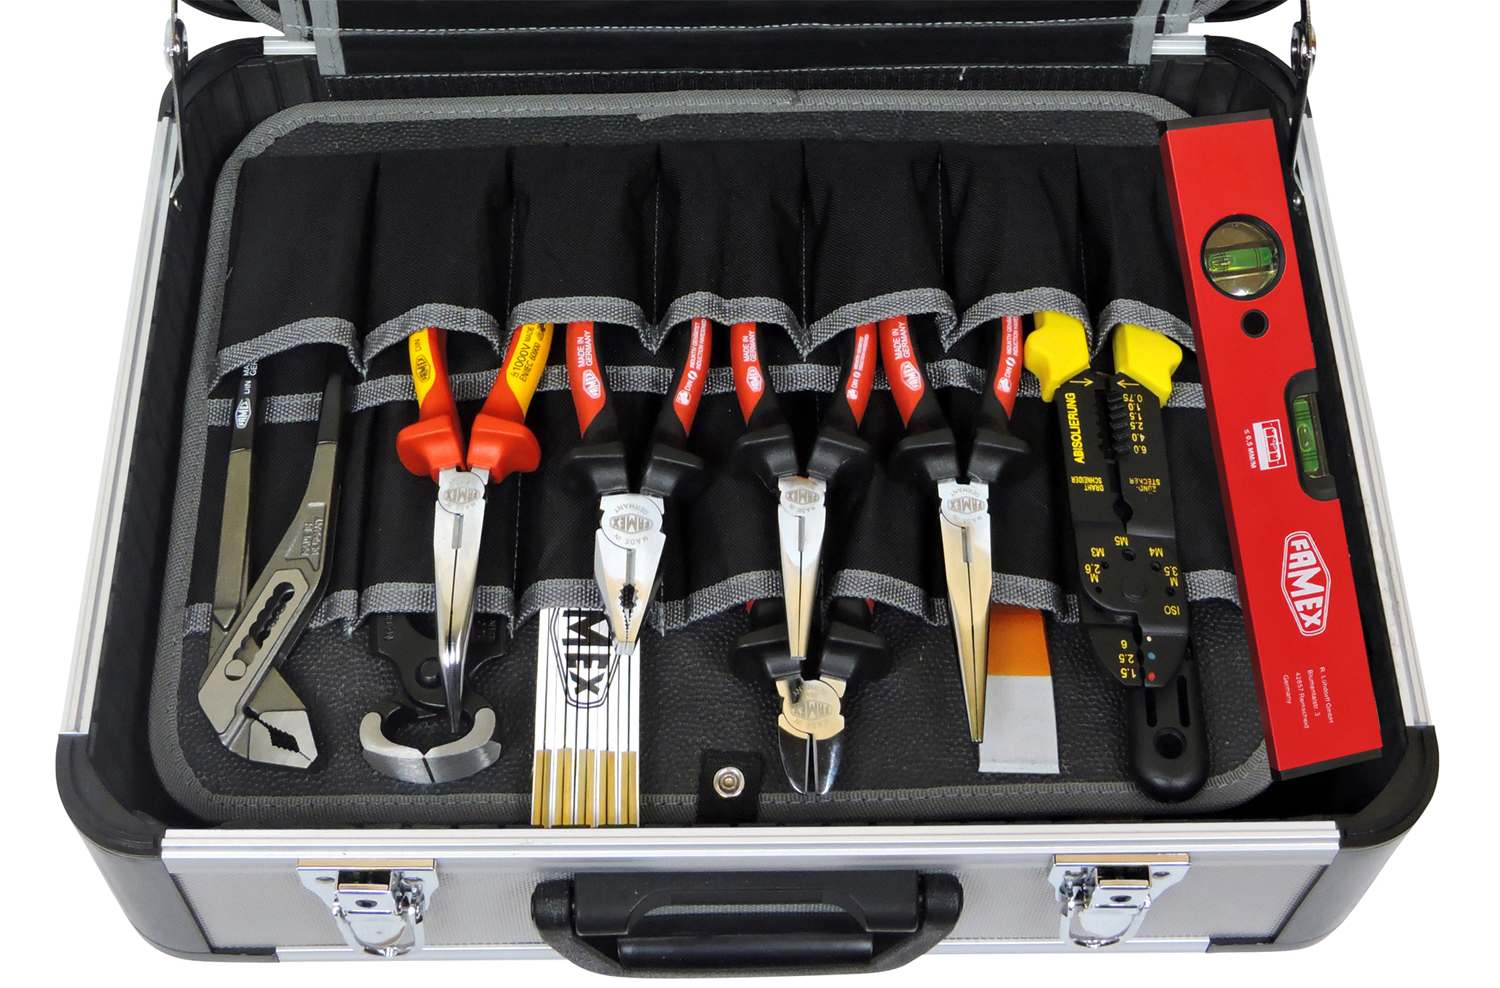 Werkzeuge günstig online kaufen - FAMEX 418-18 Profi Alu Werkzeugkoffer -  Komplettset mit Steckschlüsselsatz